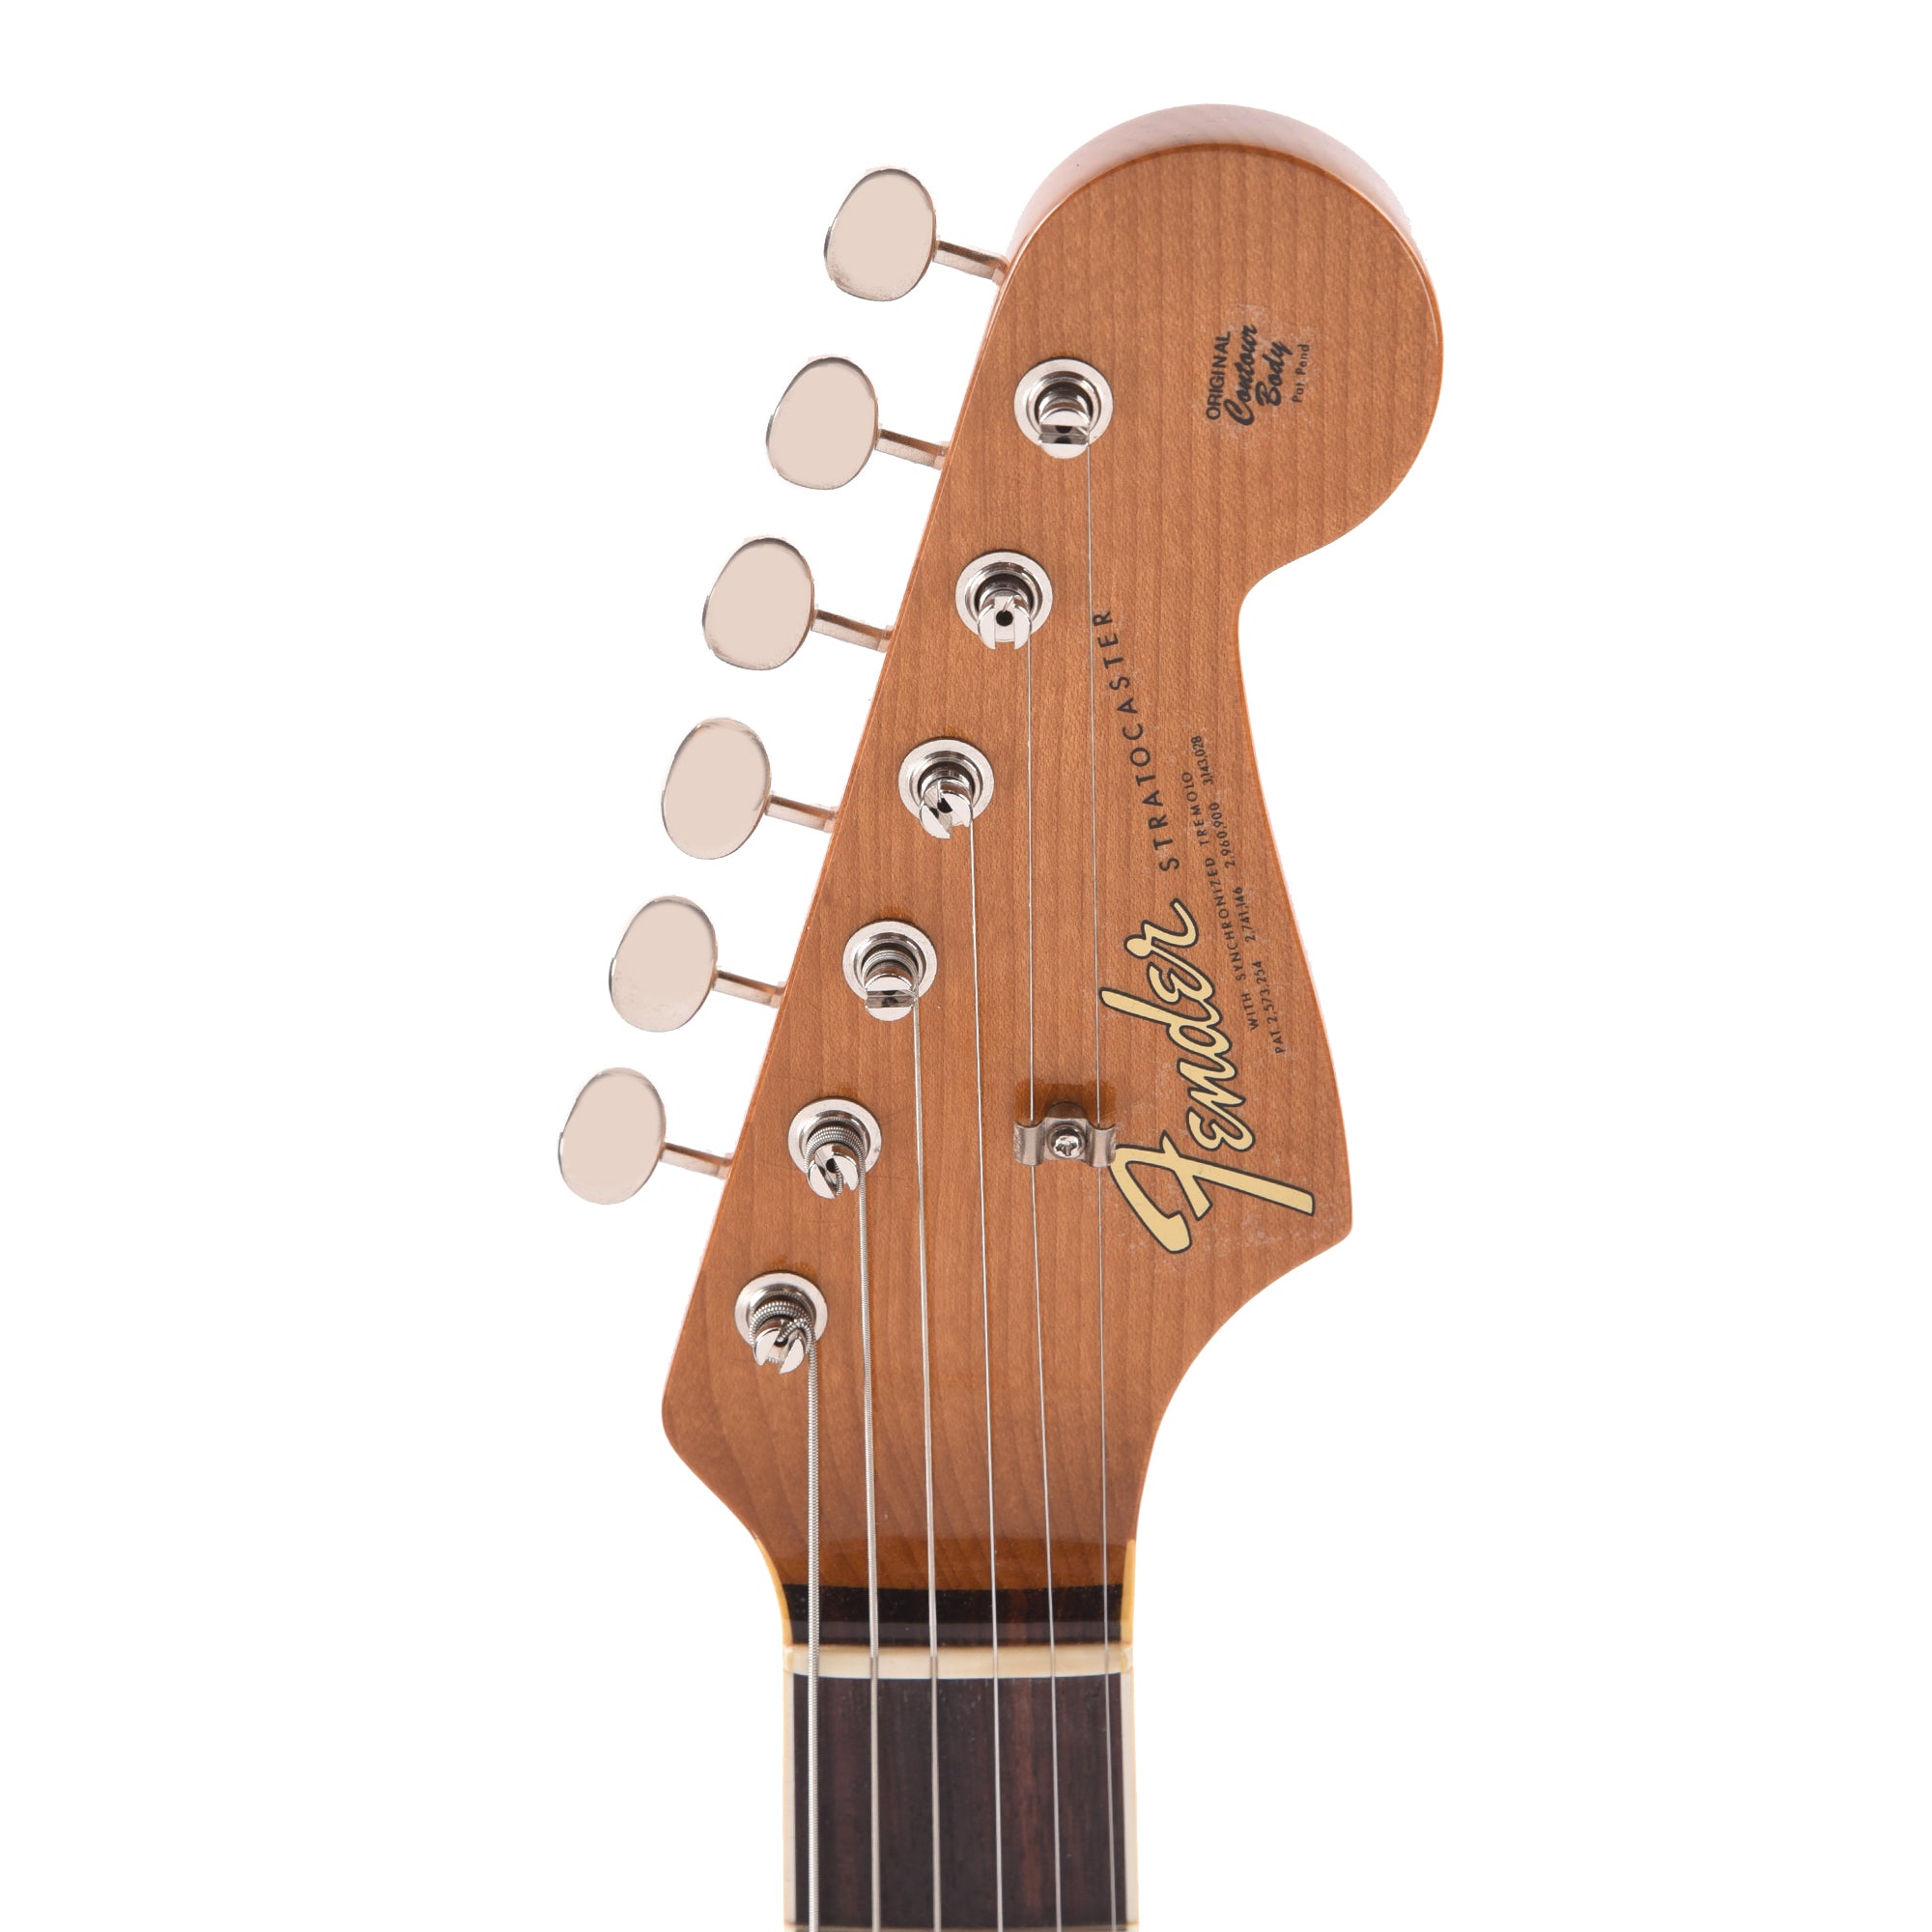 Fender Custom Shop 1965 Stratocaster 